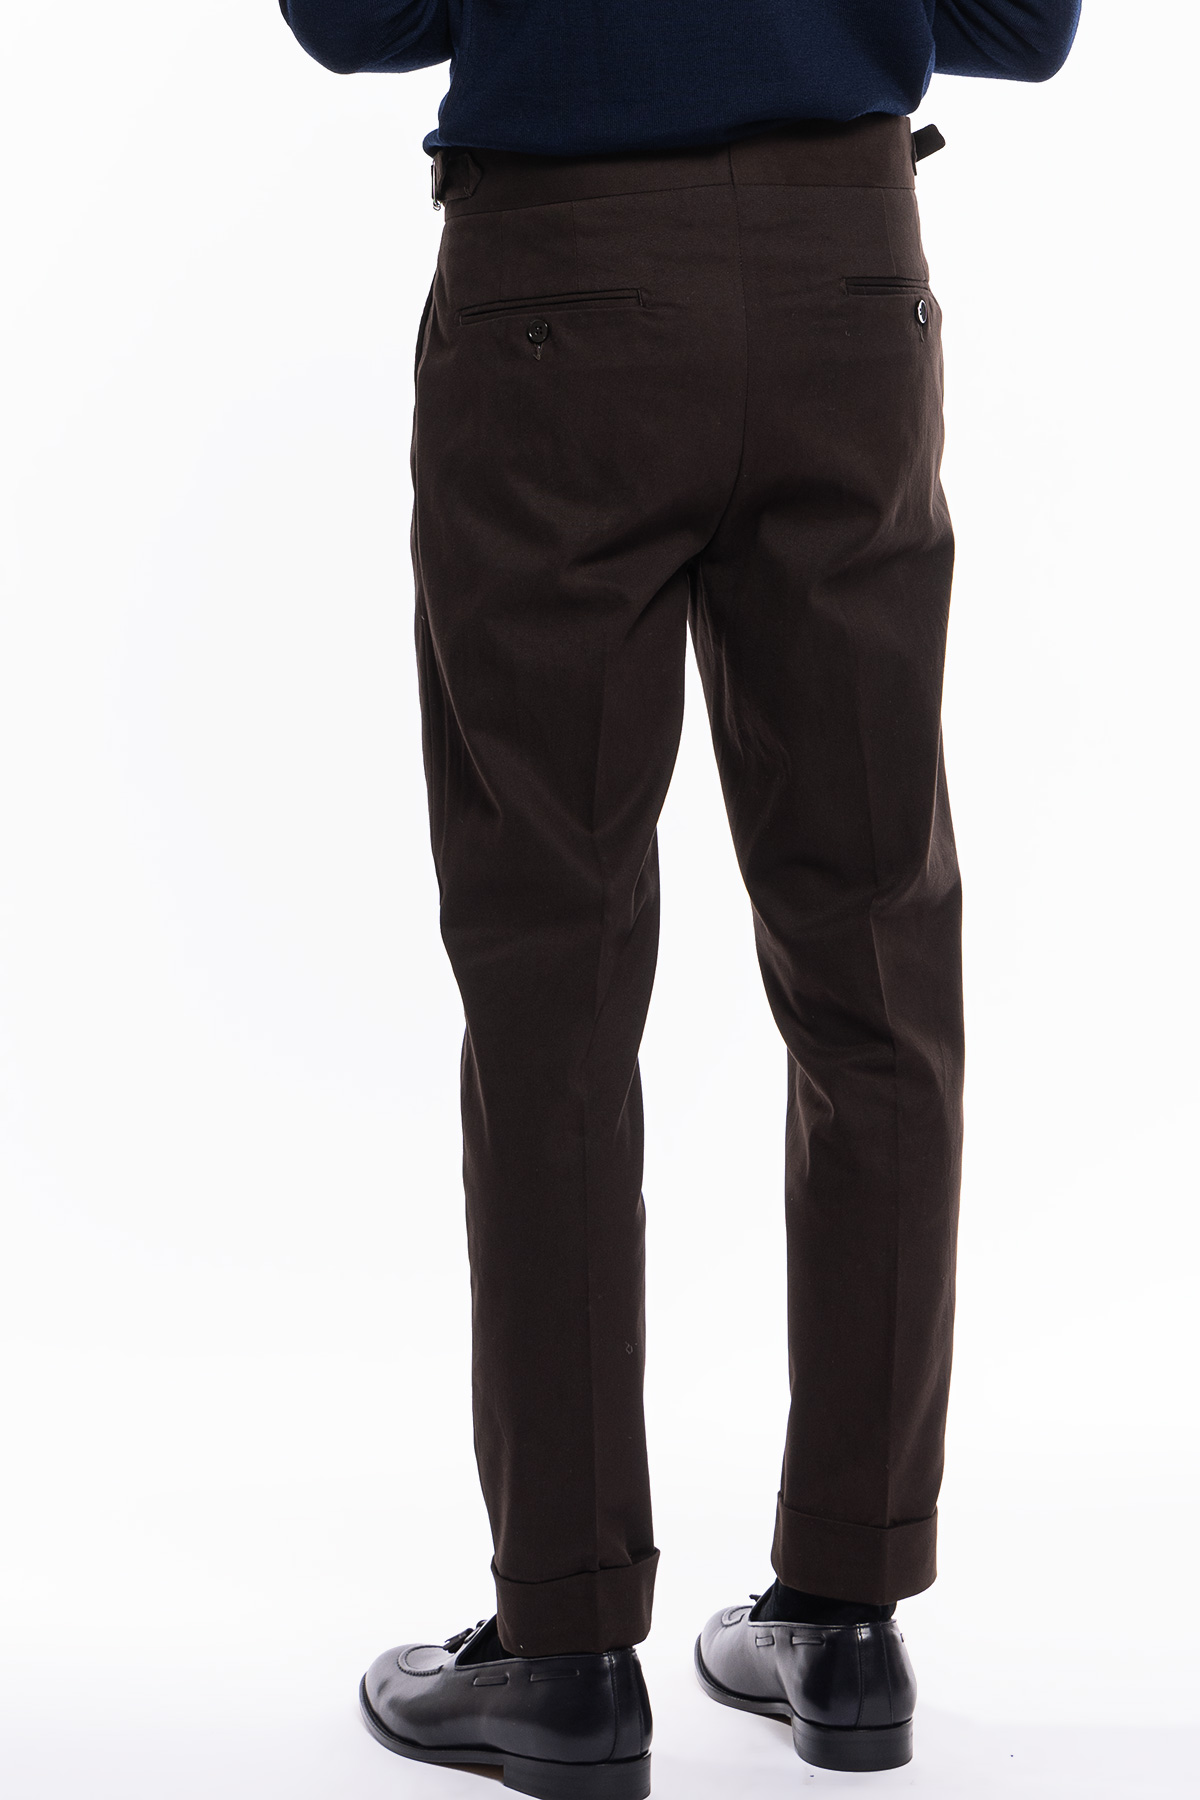 Pantalone uomo marrone vita alta tasca america in cotone con doppia pinces e fibbie laterali